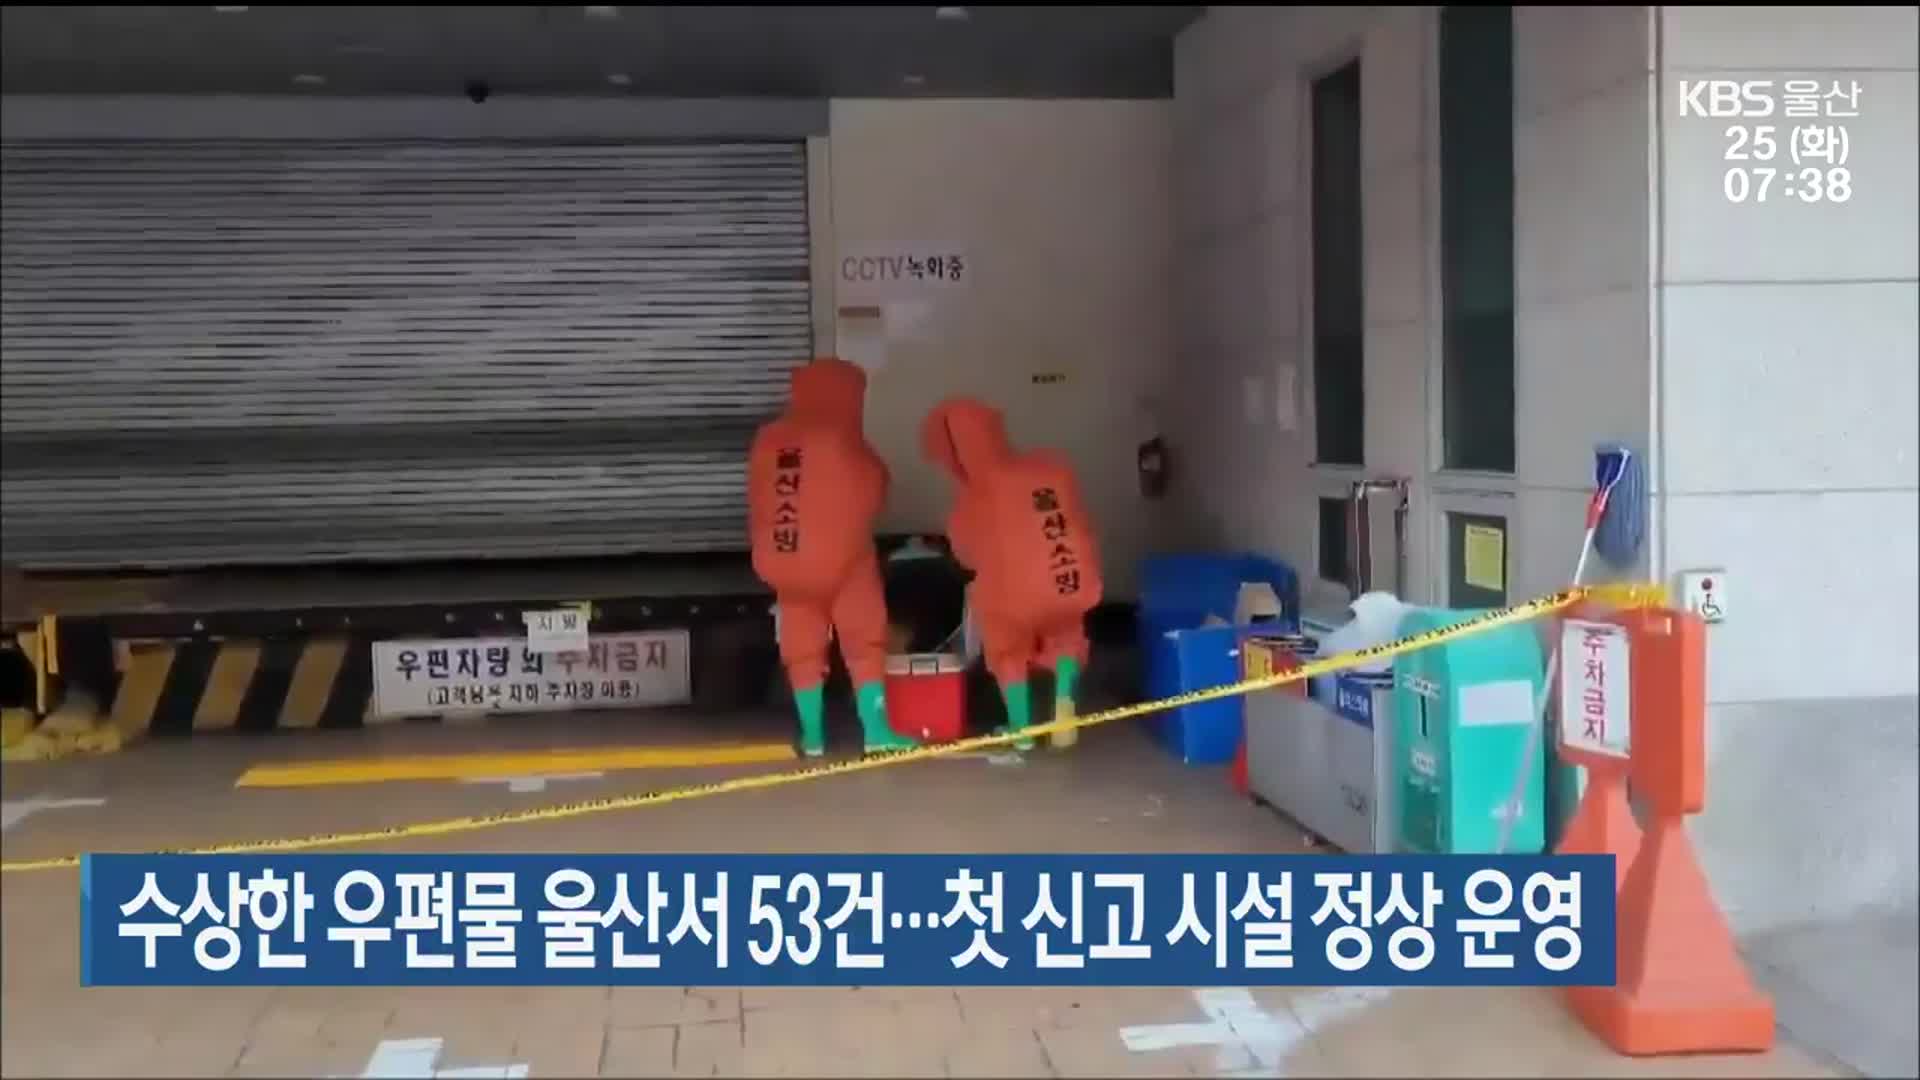 수상한 우편물 울산서 53건…첫 신고 시설 정상 운영